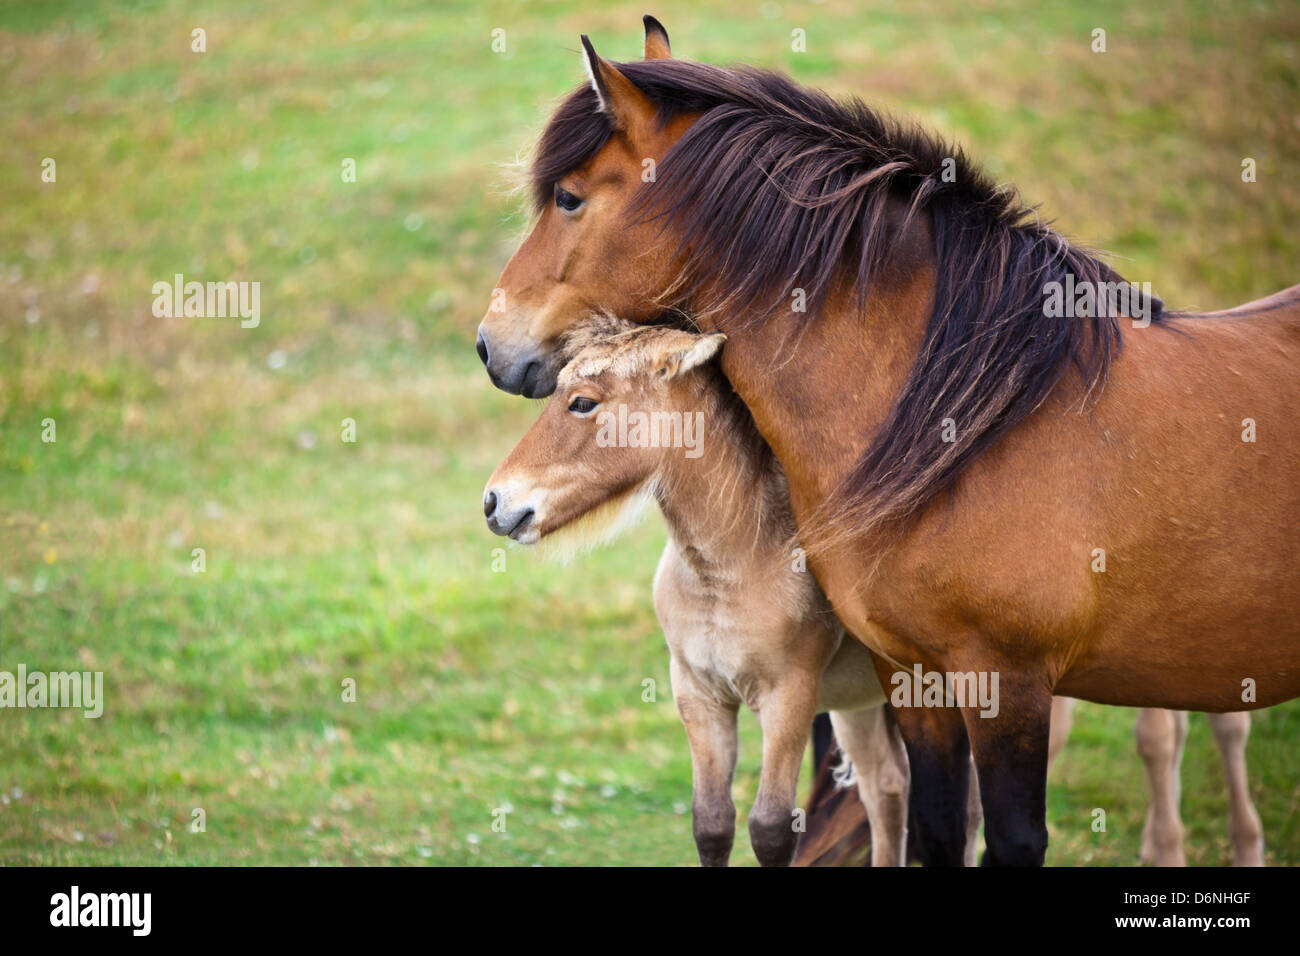 Marrone a cavallo e il suo puledro in un campo Verde di erba. Inquadratura orizzontale Foto Stock